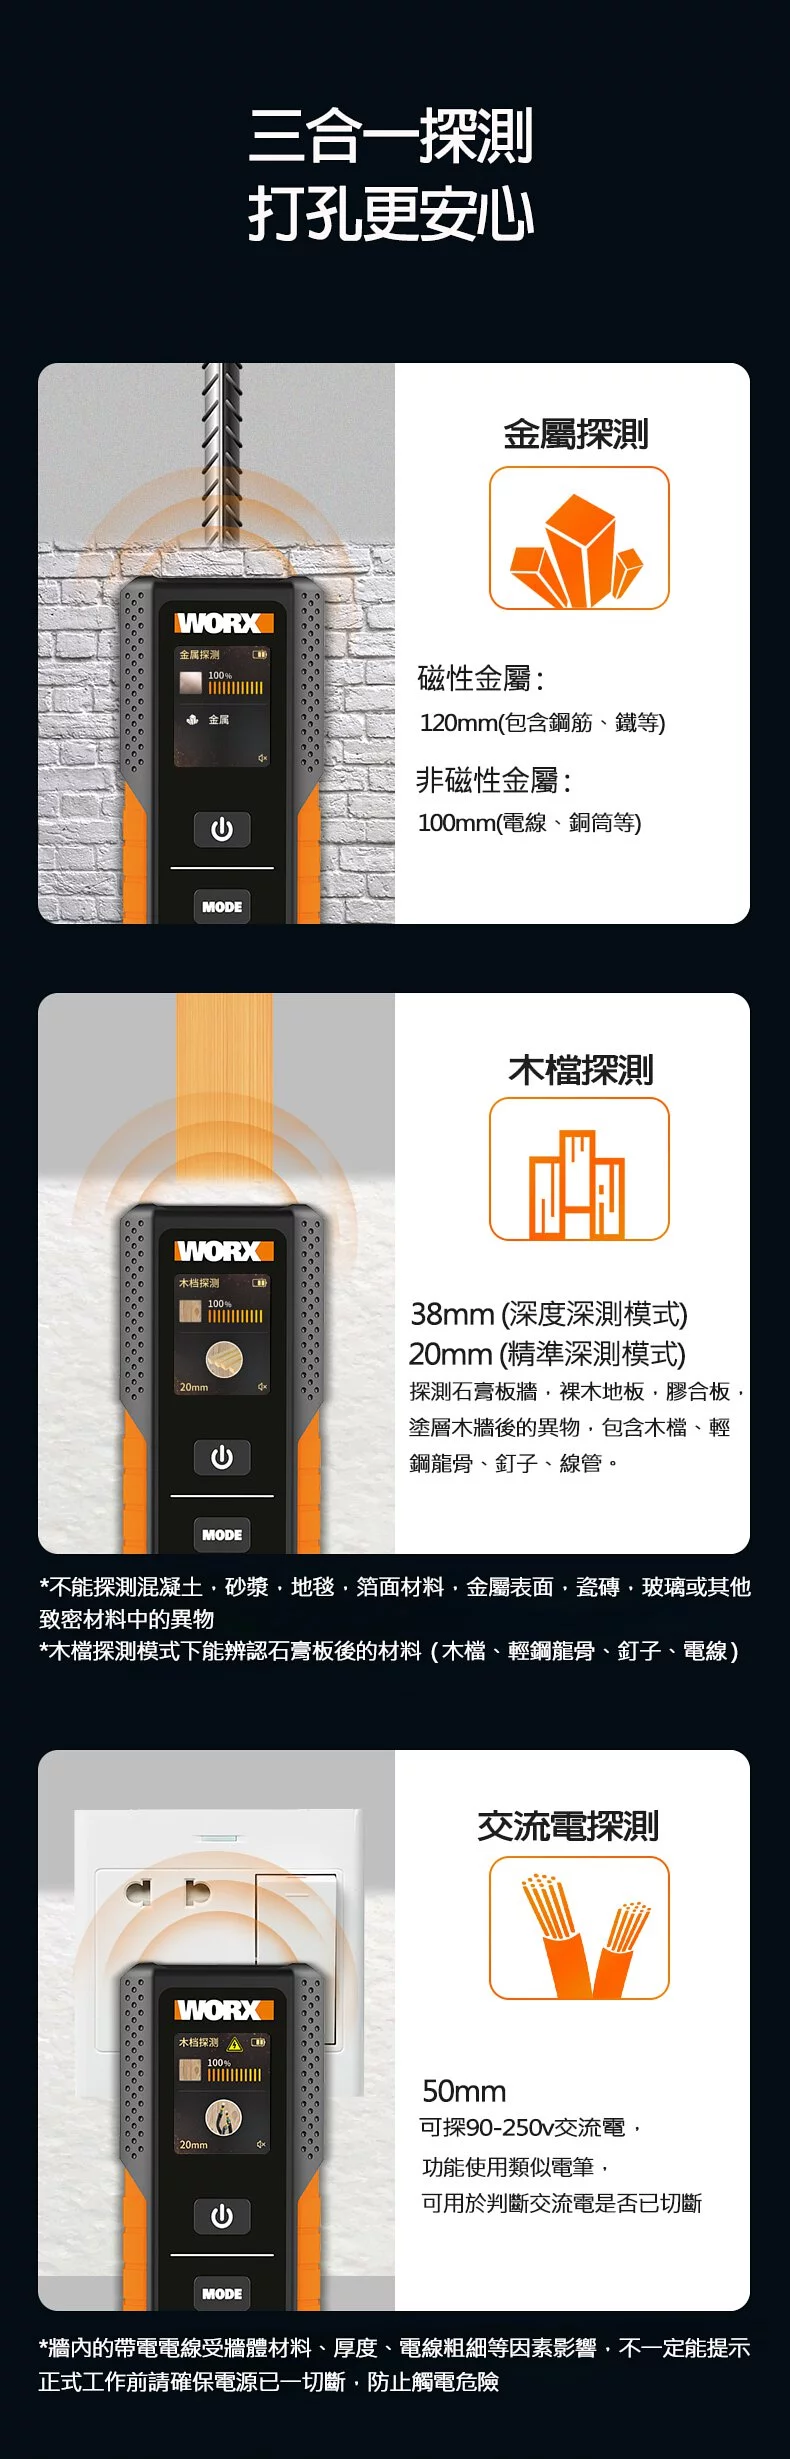 威克士 WORX WX086 - 牆體探測儀